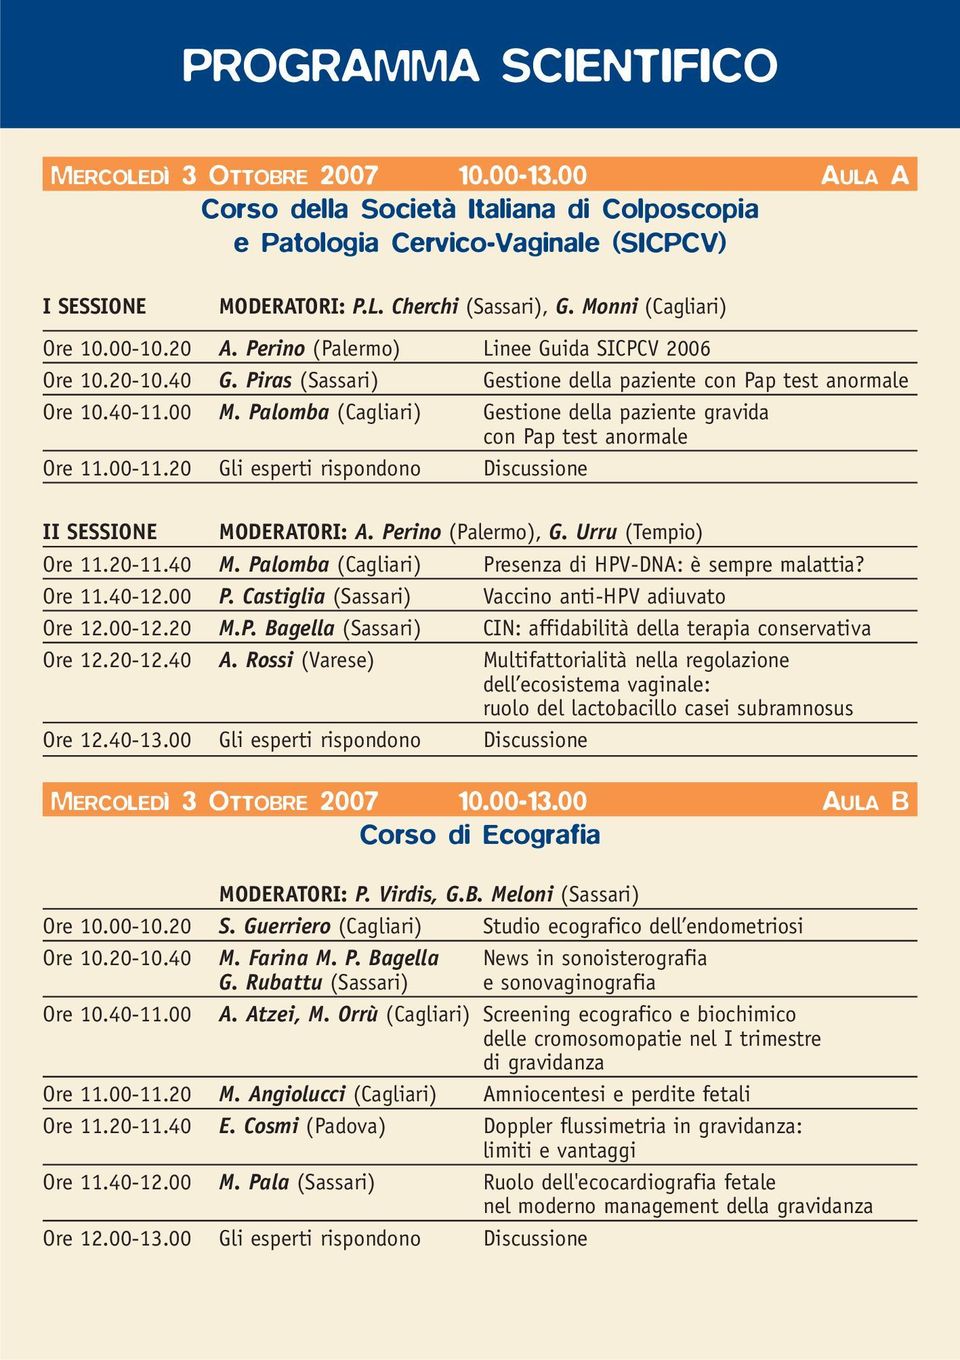 Palomba (Cagliari) Gestione della paziente gravida con Pap test anormale Ore 11.00-11.20 Gli esperti rispondono Discussione II SESSIONE MODERATORI: A. Perino (Palermo), G. Urru (Tempio) Ore 11.20-11.